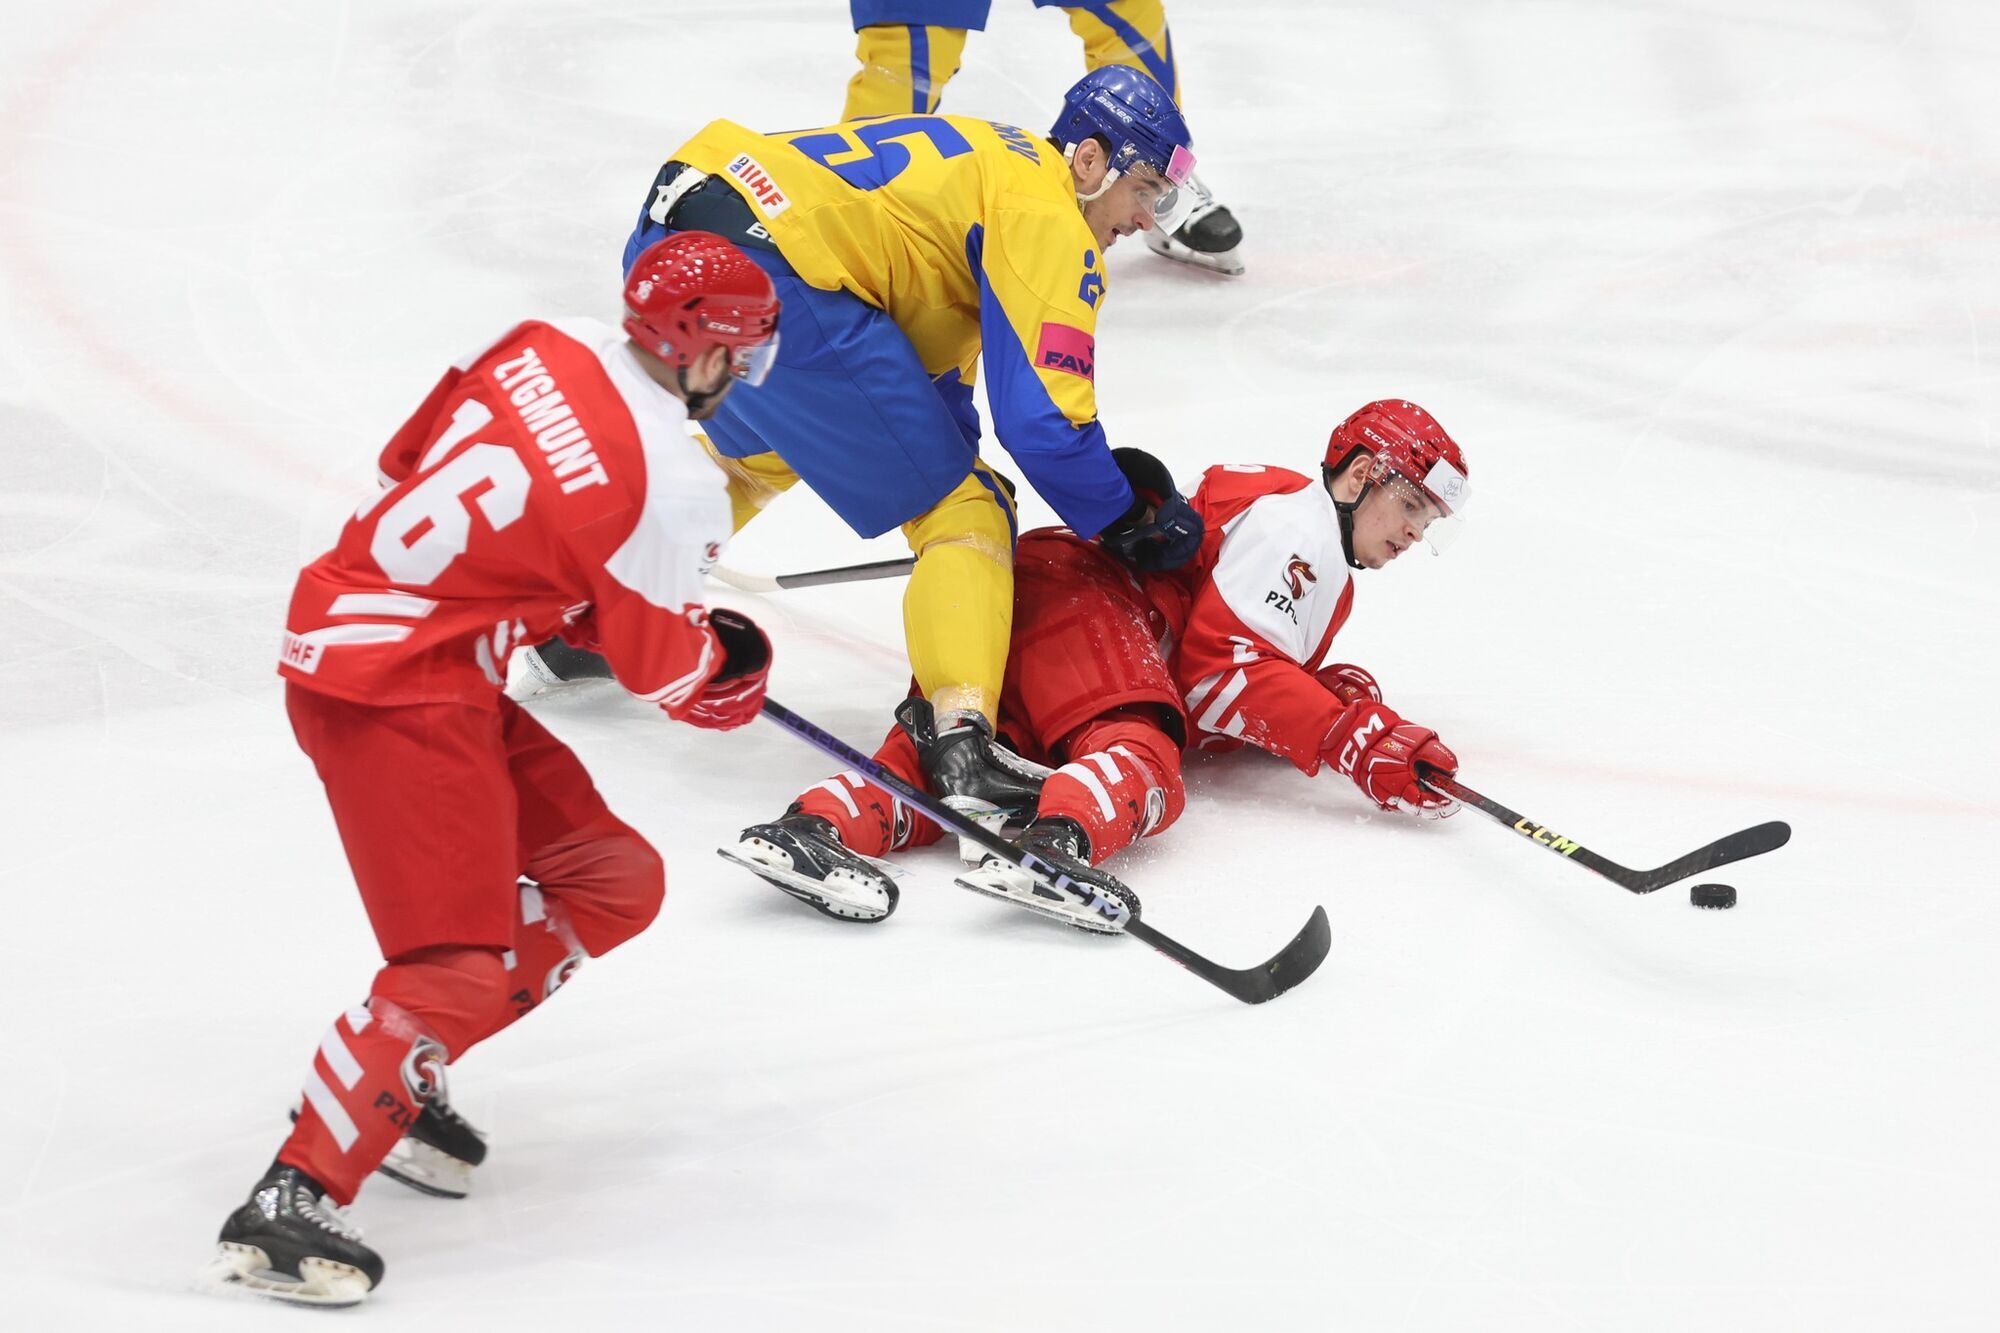 Грандіозна сенсація! Україна здобула драматичну перемогу у Польщі у кваліфікації Олімпіади-2026 з хокею. Відео